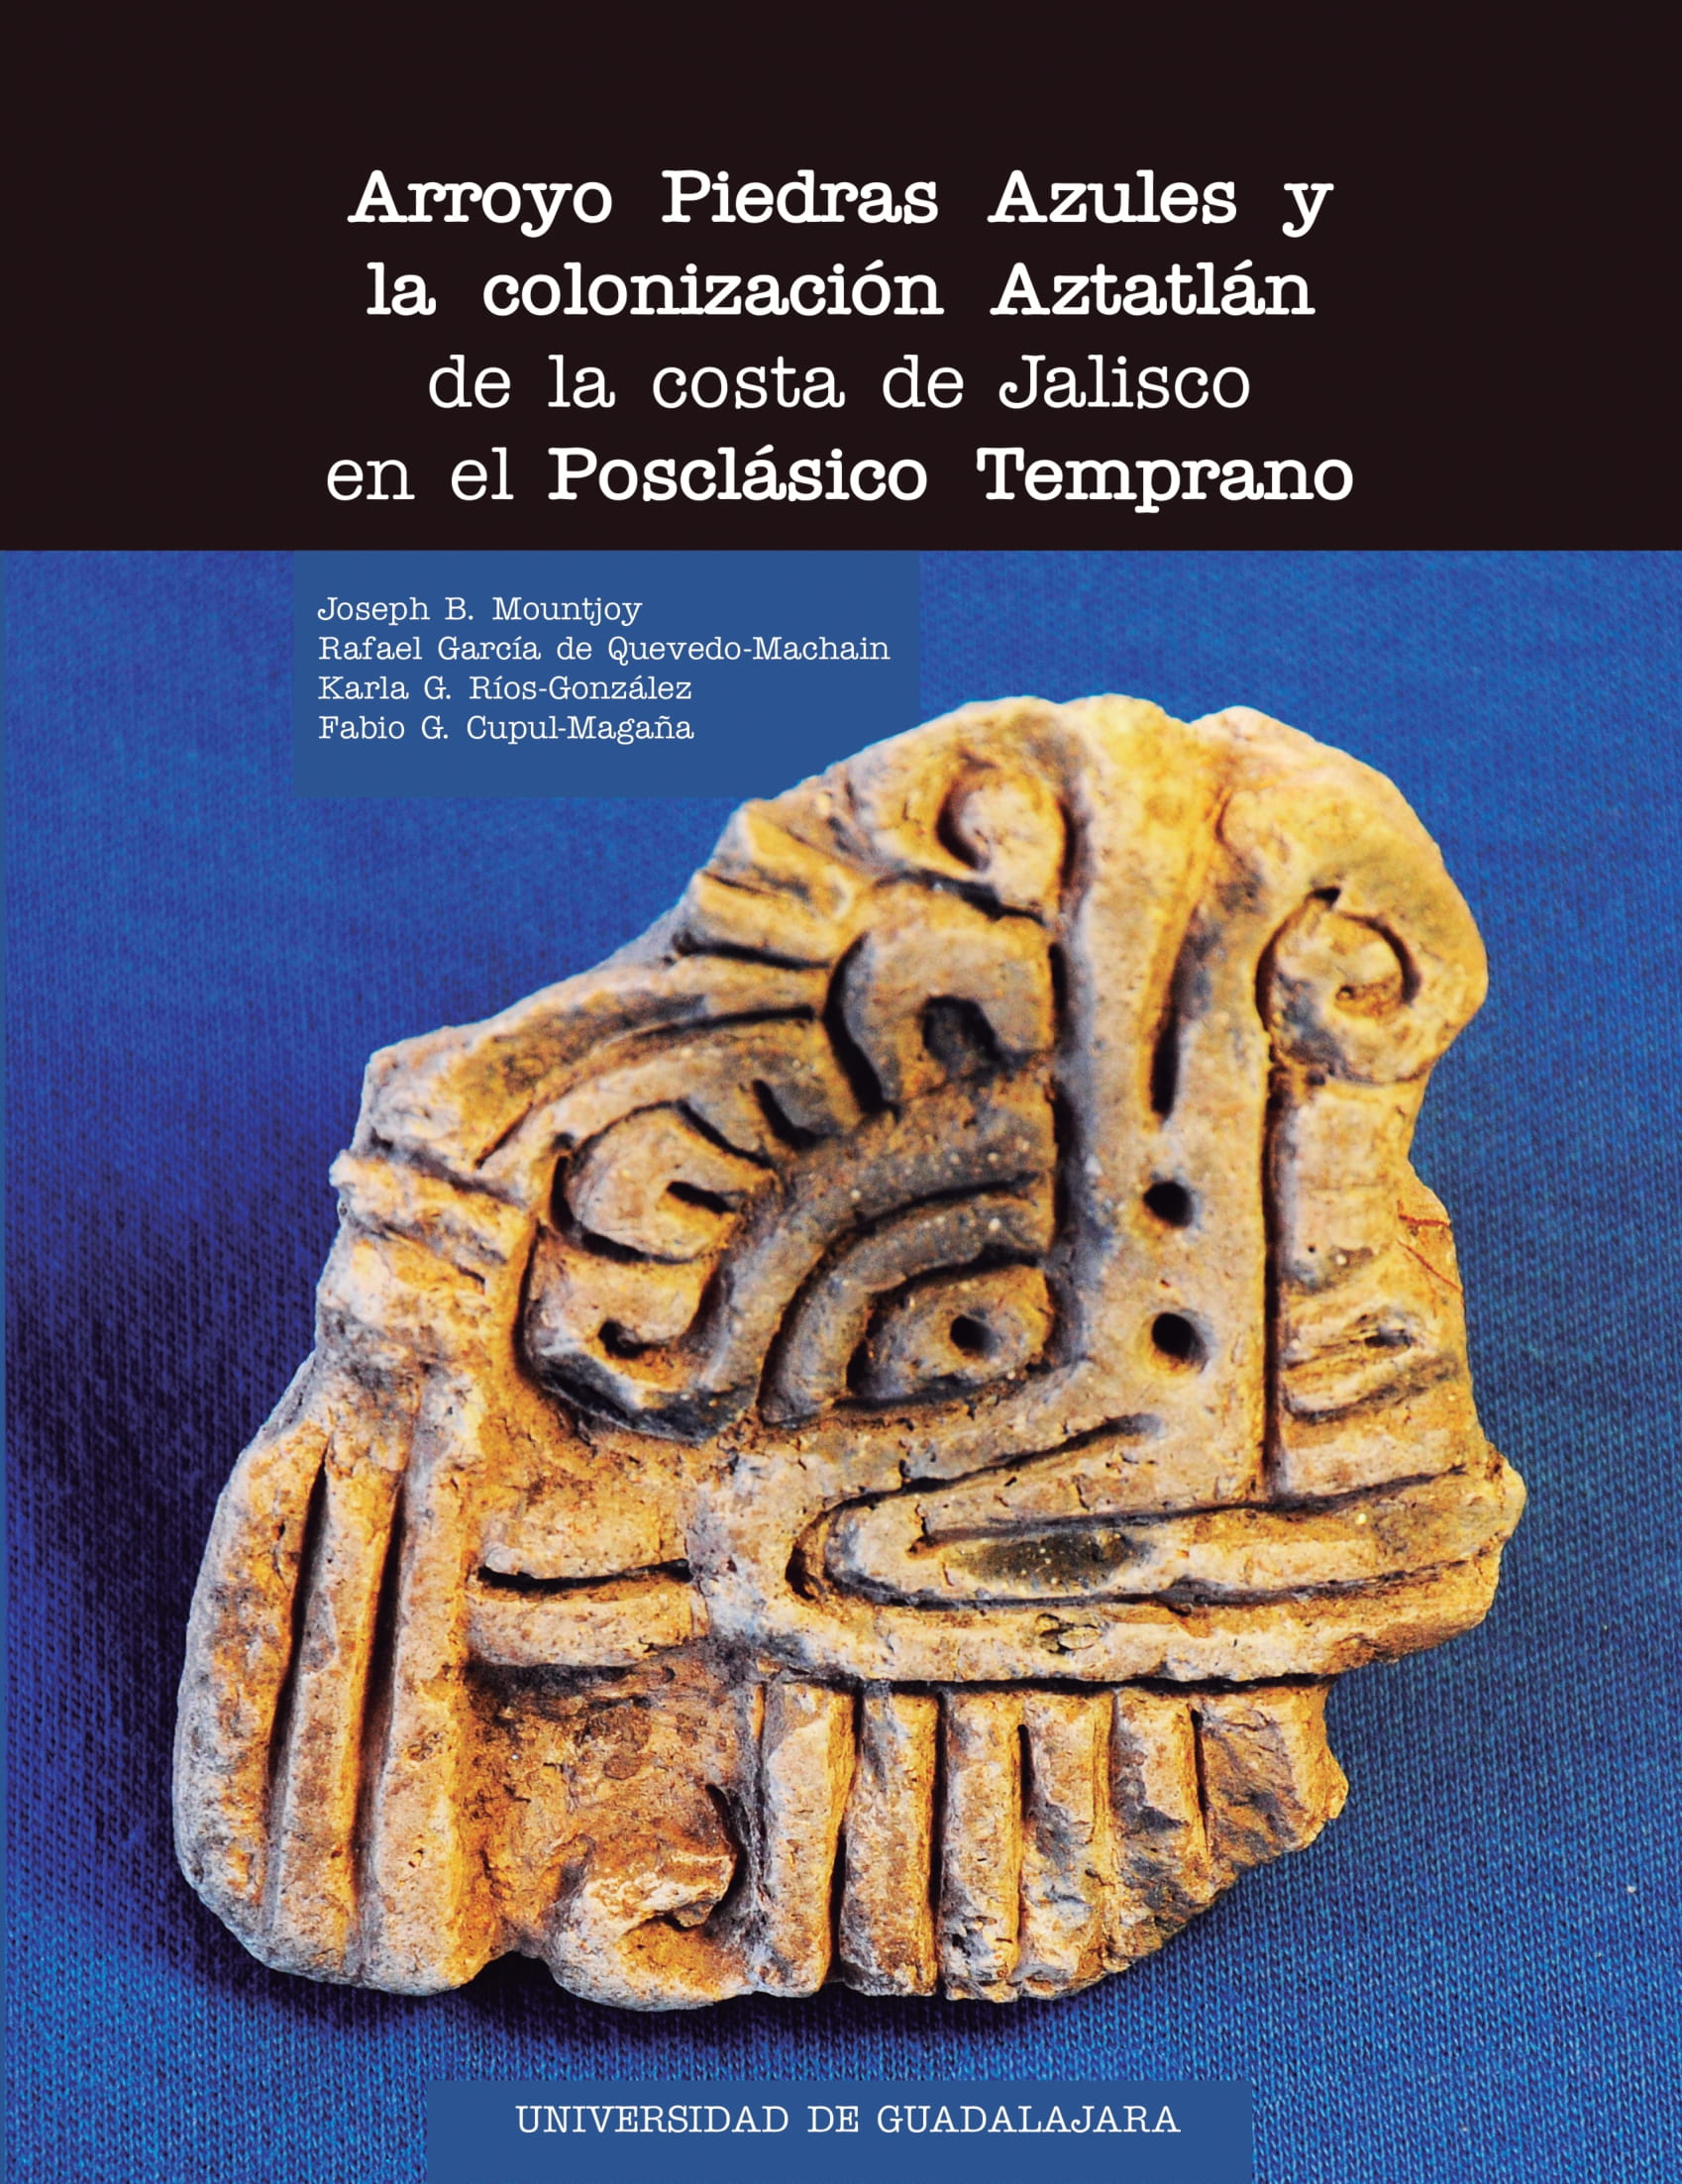 Arroyo Piedras Azules y la colonización Aztatlán de la costa de Jalisco en el Posclásico Temprano<br />
    